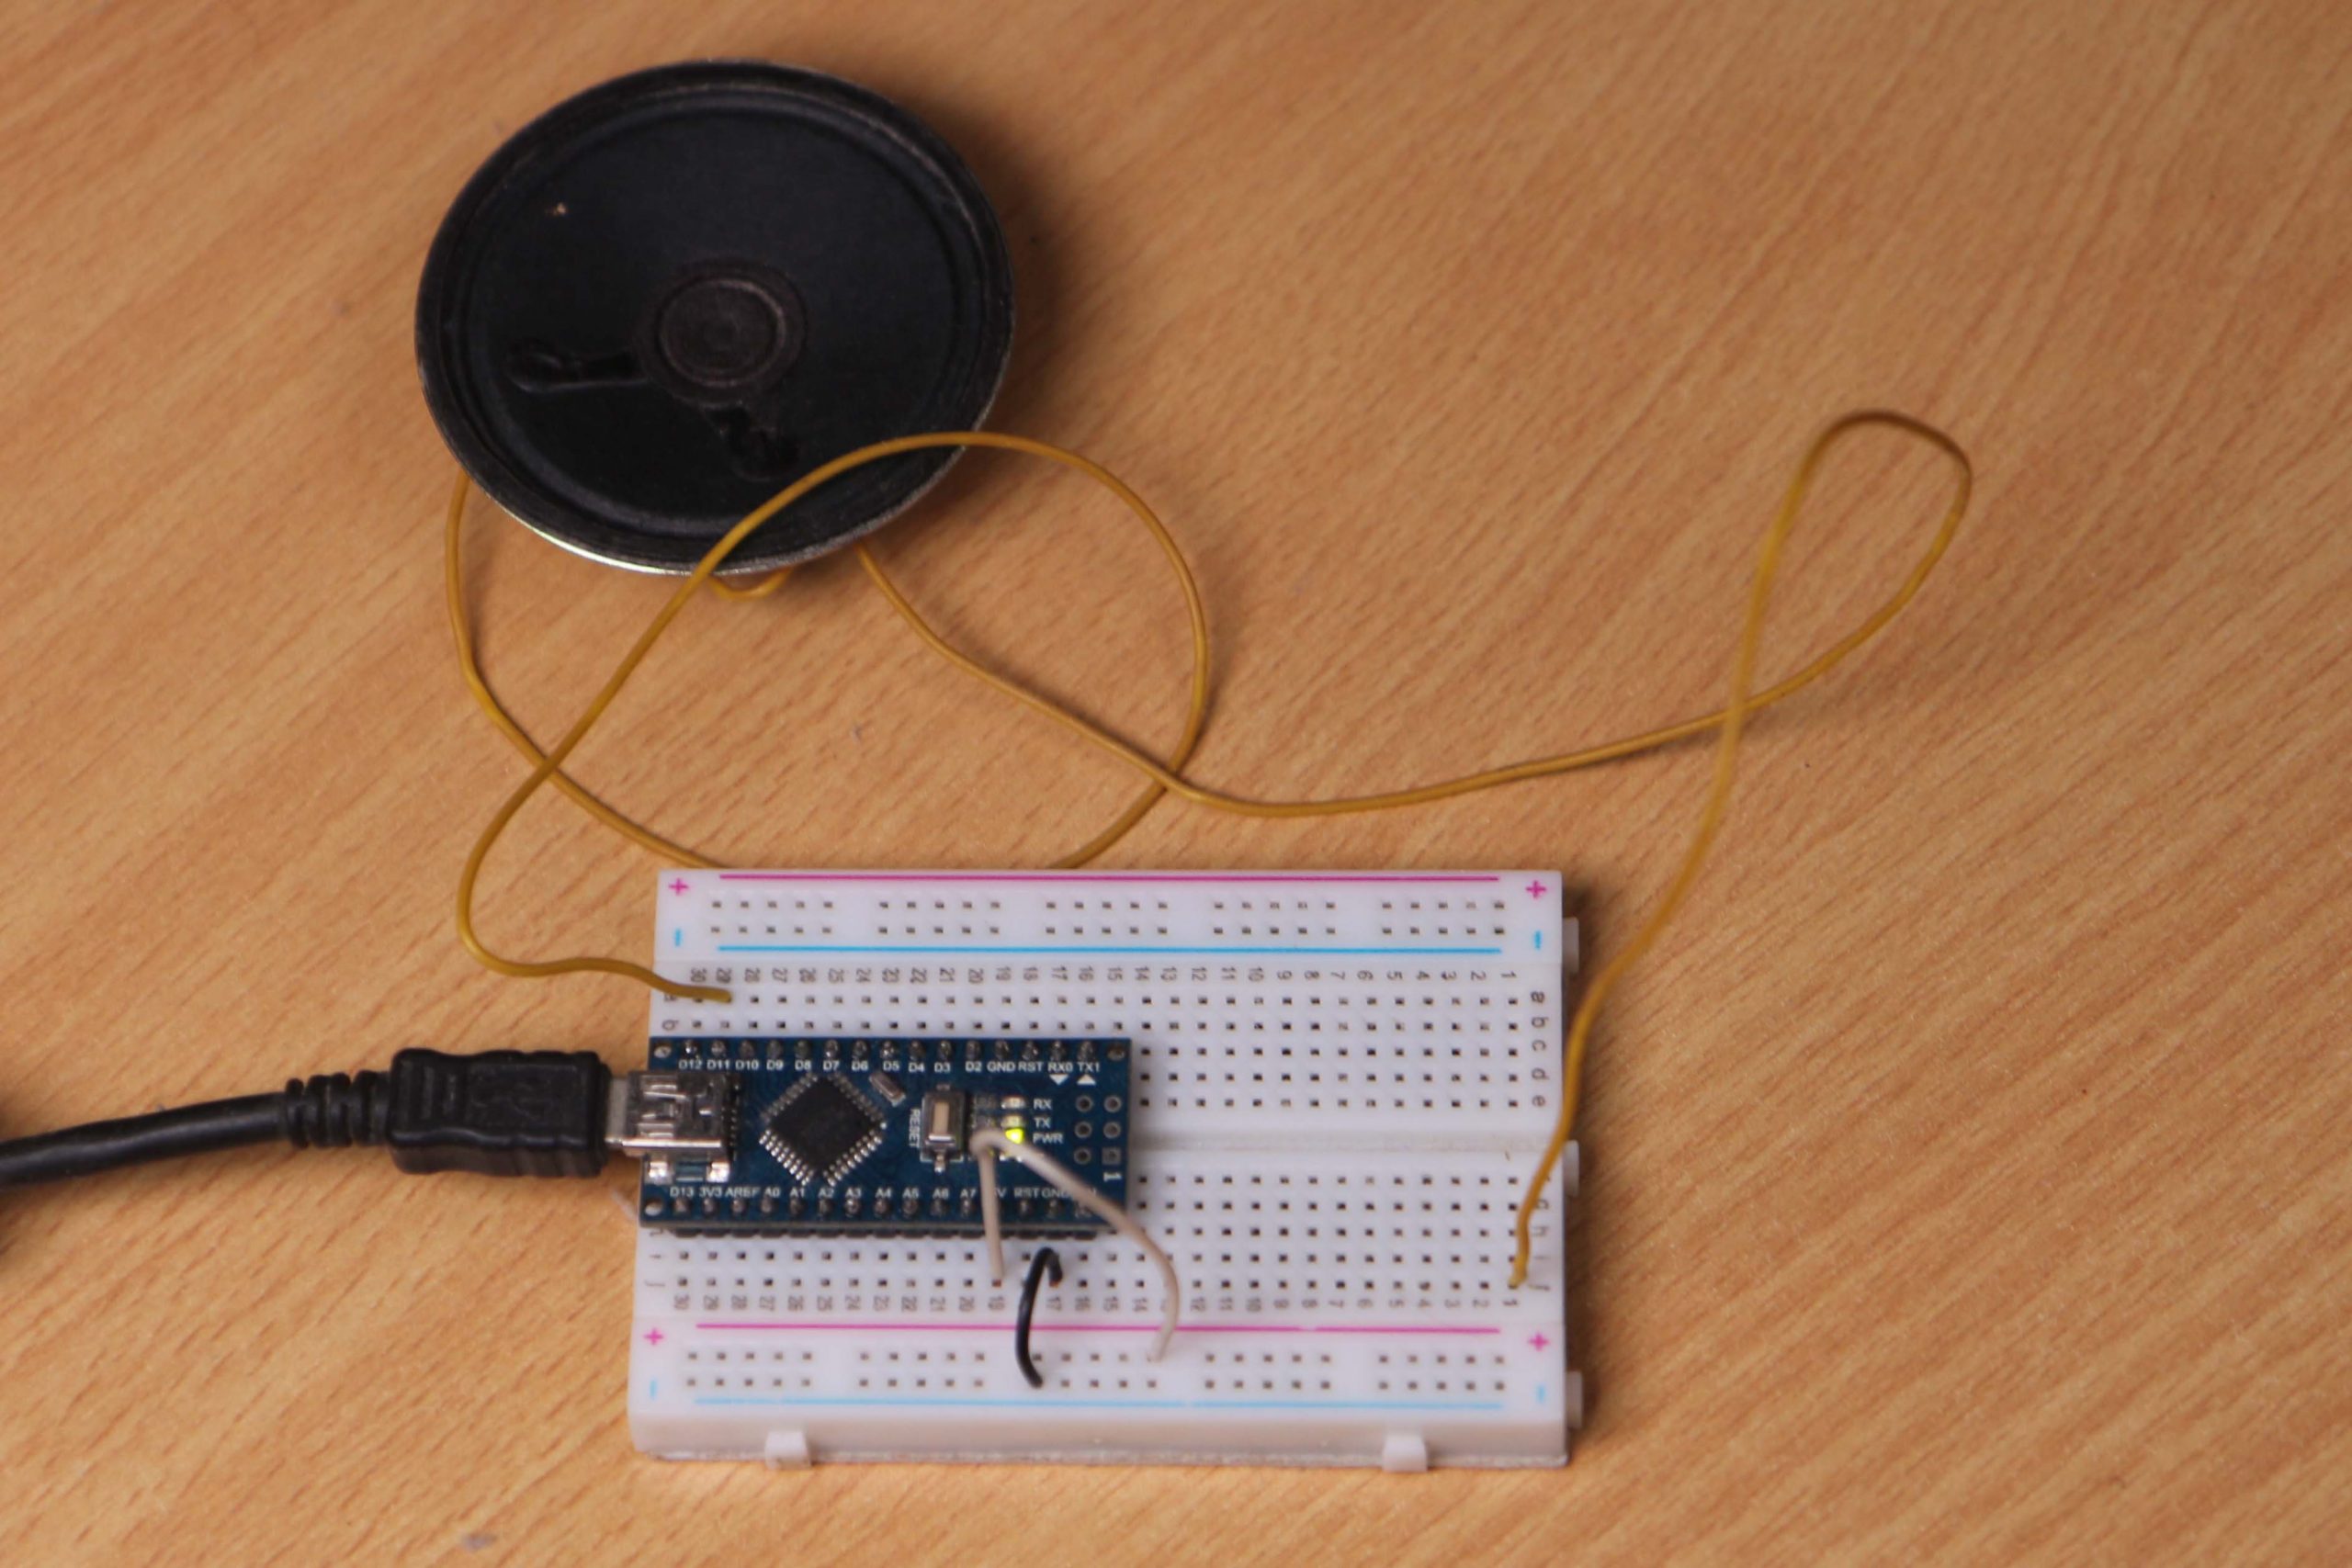 Rangkaian pembangkit suara burung dengan Arduino